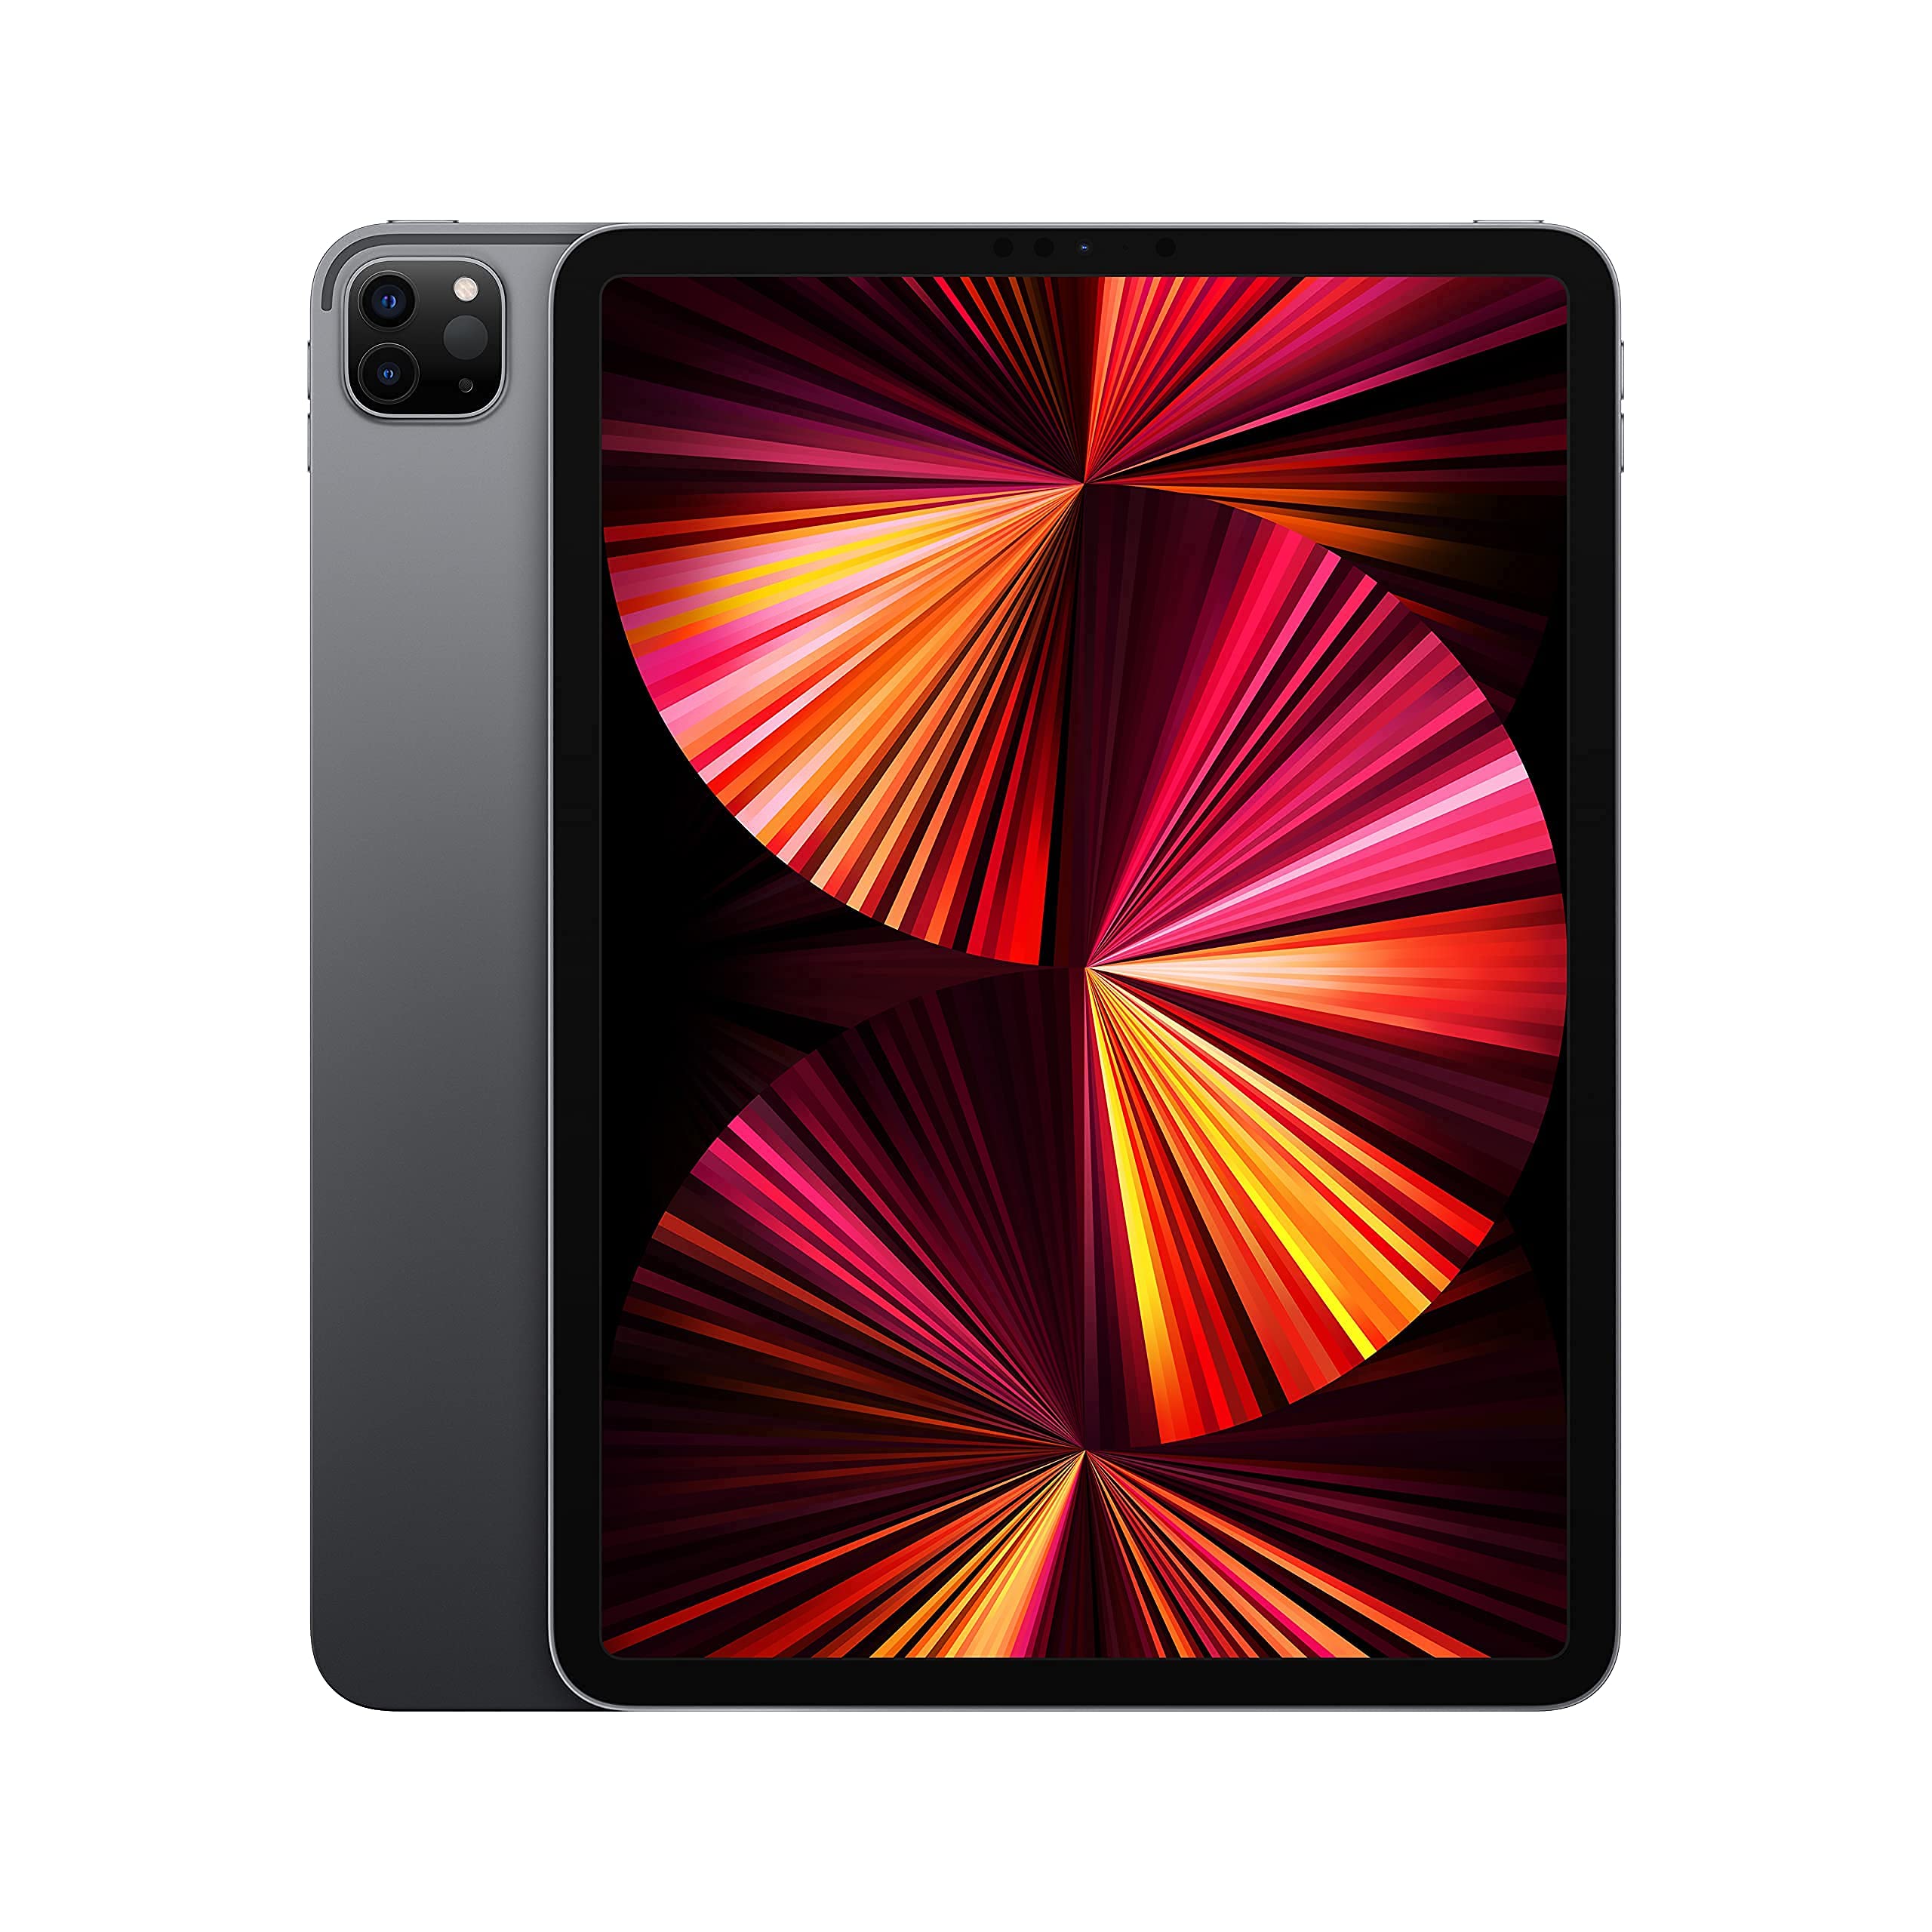 2021 Apple 11-inch iPad Pro (Wi-Fi, 256GB) - Space Gray (Renewed)